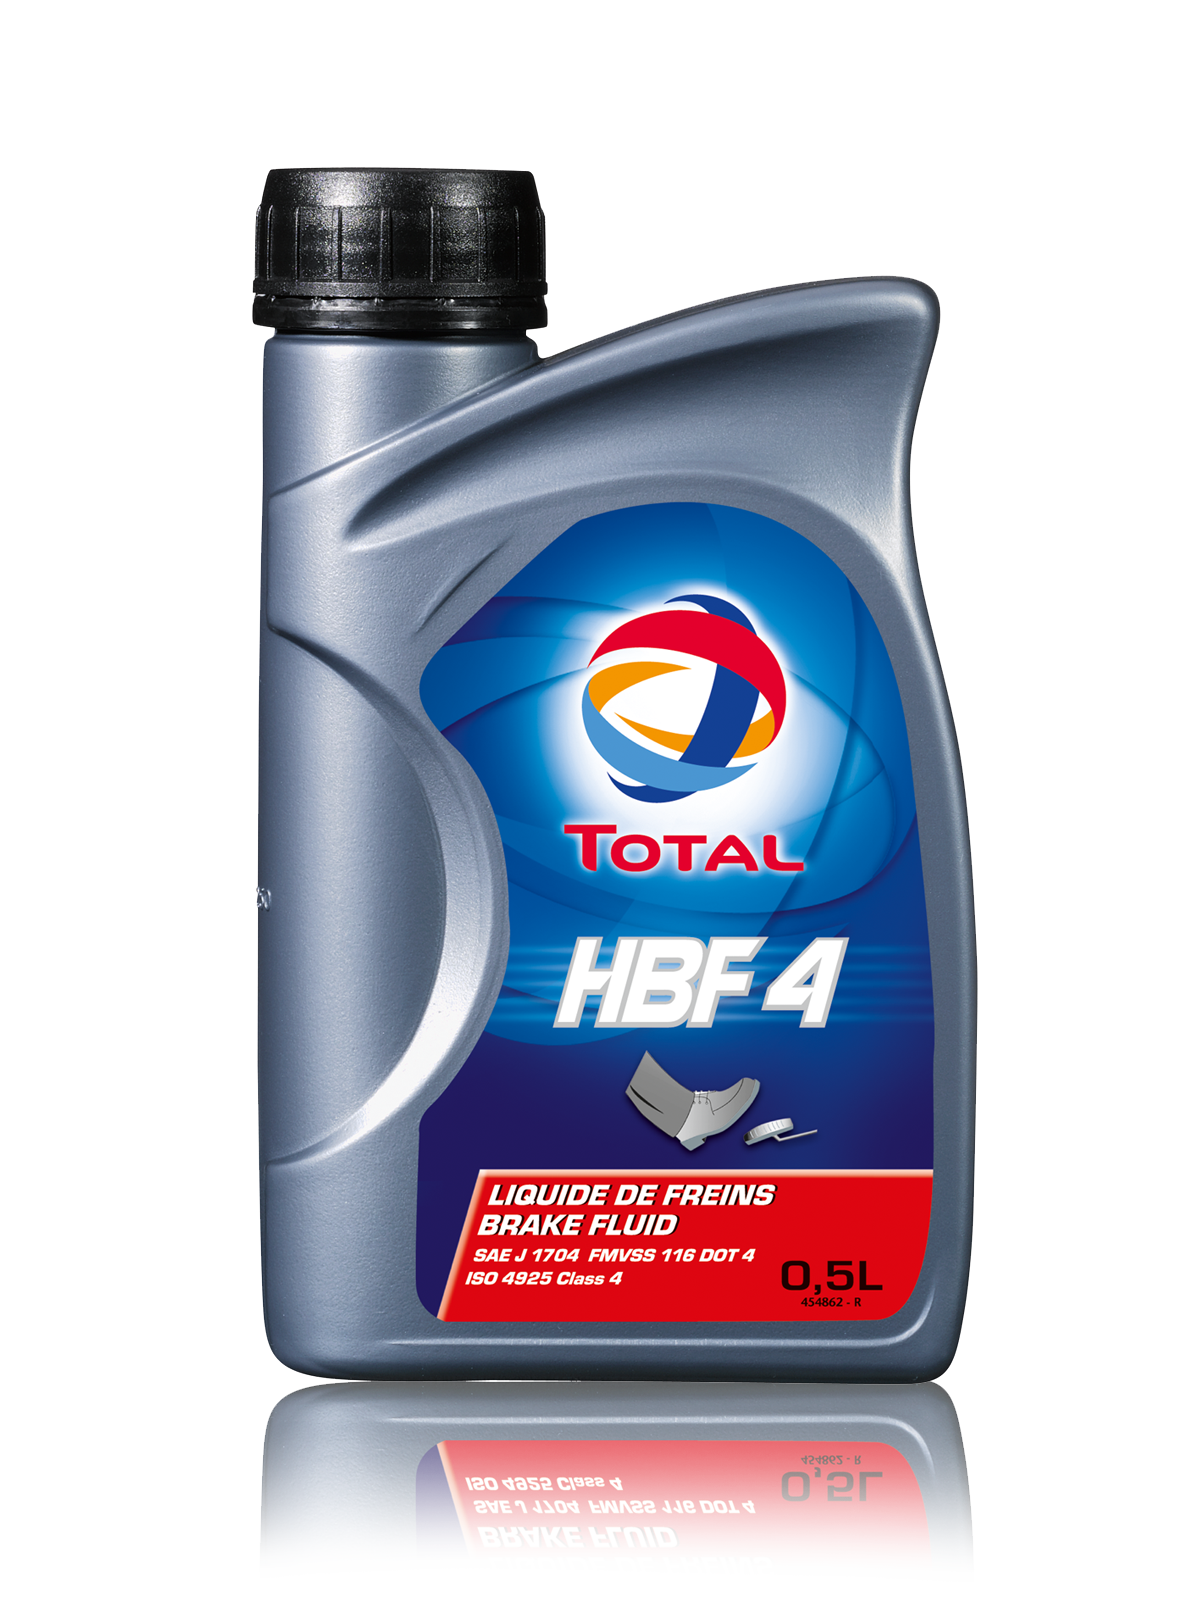 Купить запчасть TOTAL - 181942 Трансмиссионное масло Hbf 4